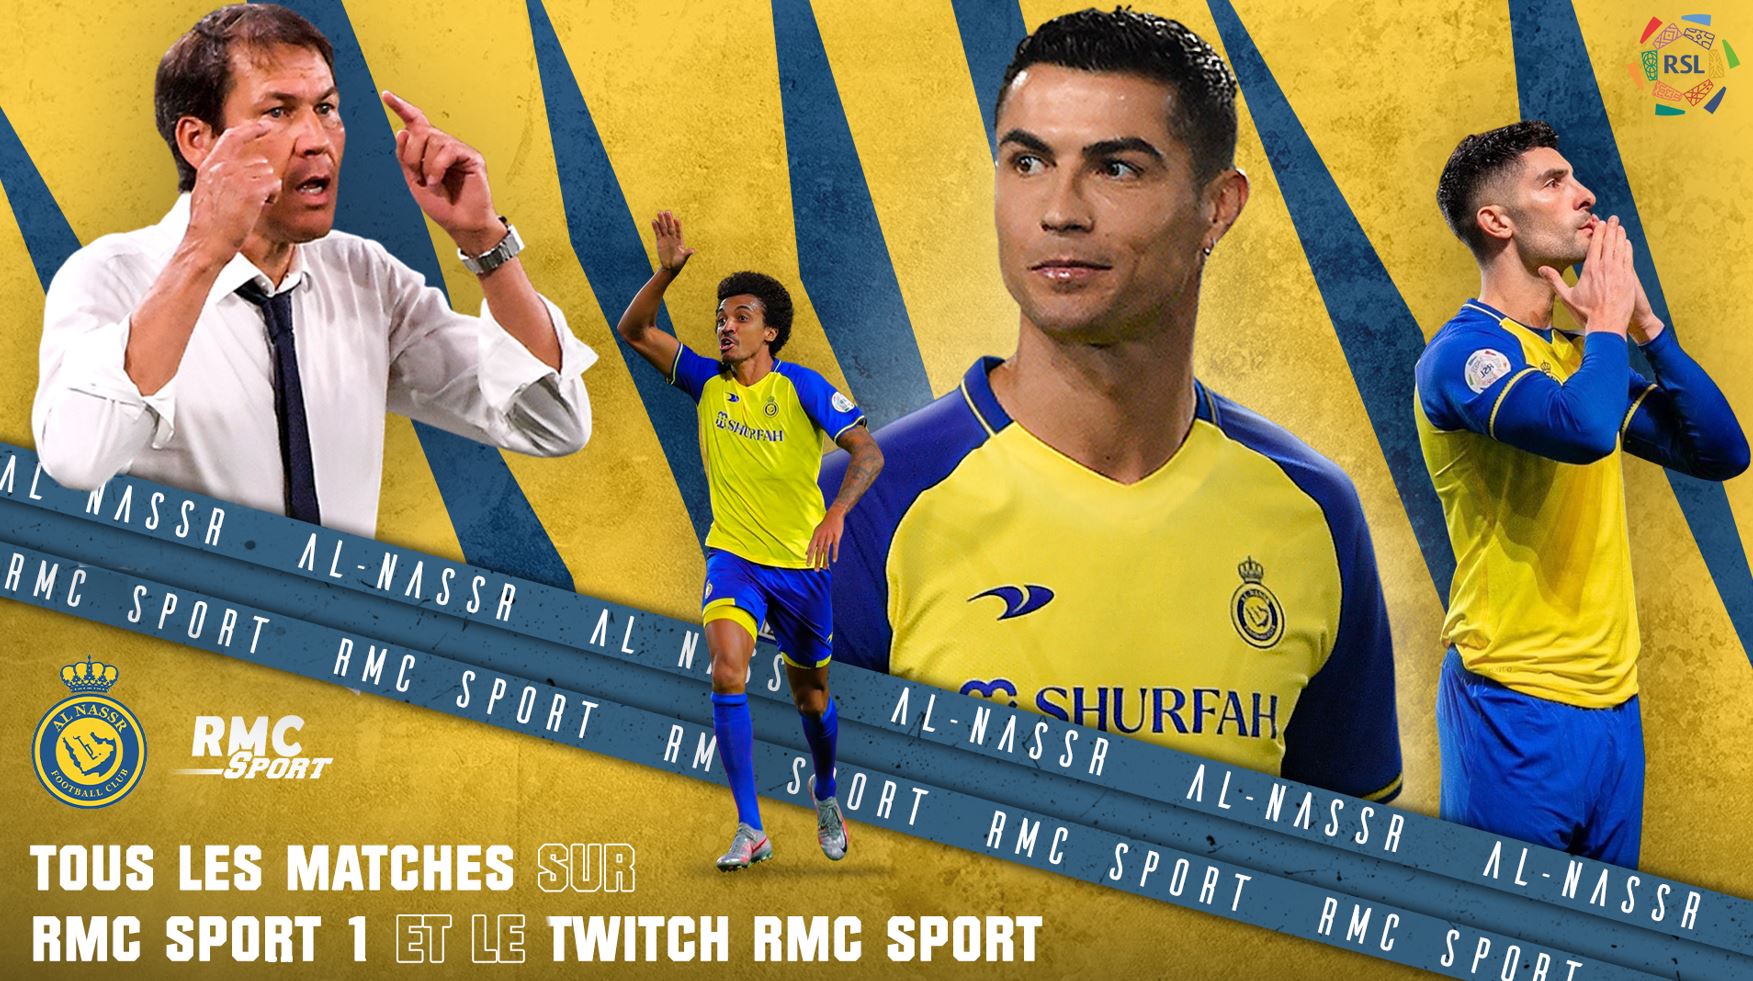 Les matches de Cristiano Ronaldo avec le club d’Al-Nassr en direct sur les antennes de RMC Sport